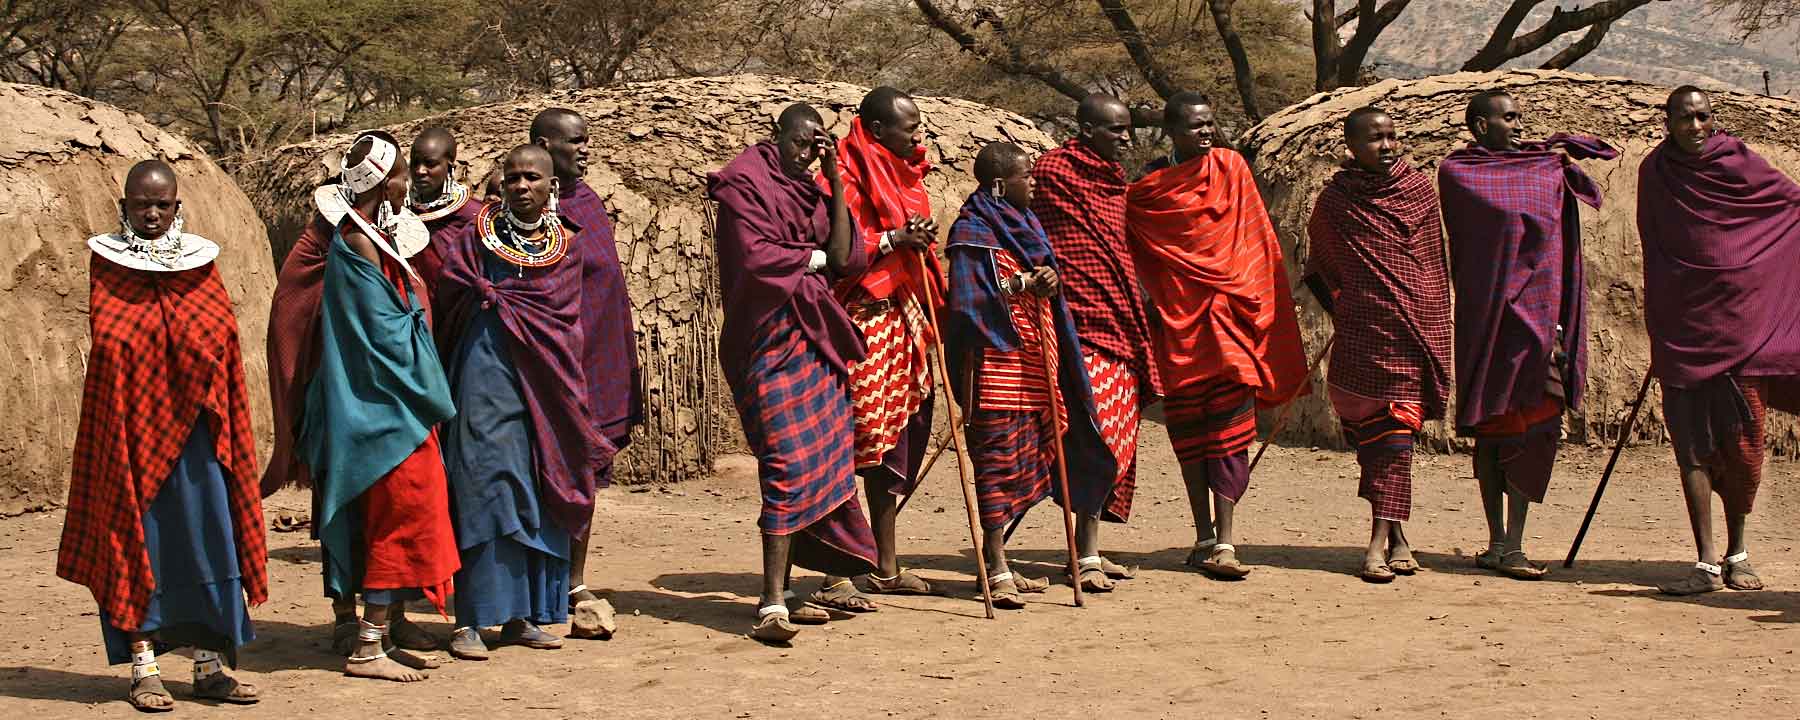 Tanzania Ngorongoro Conservation Area Maasai settlement